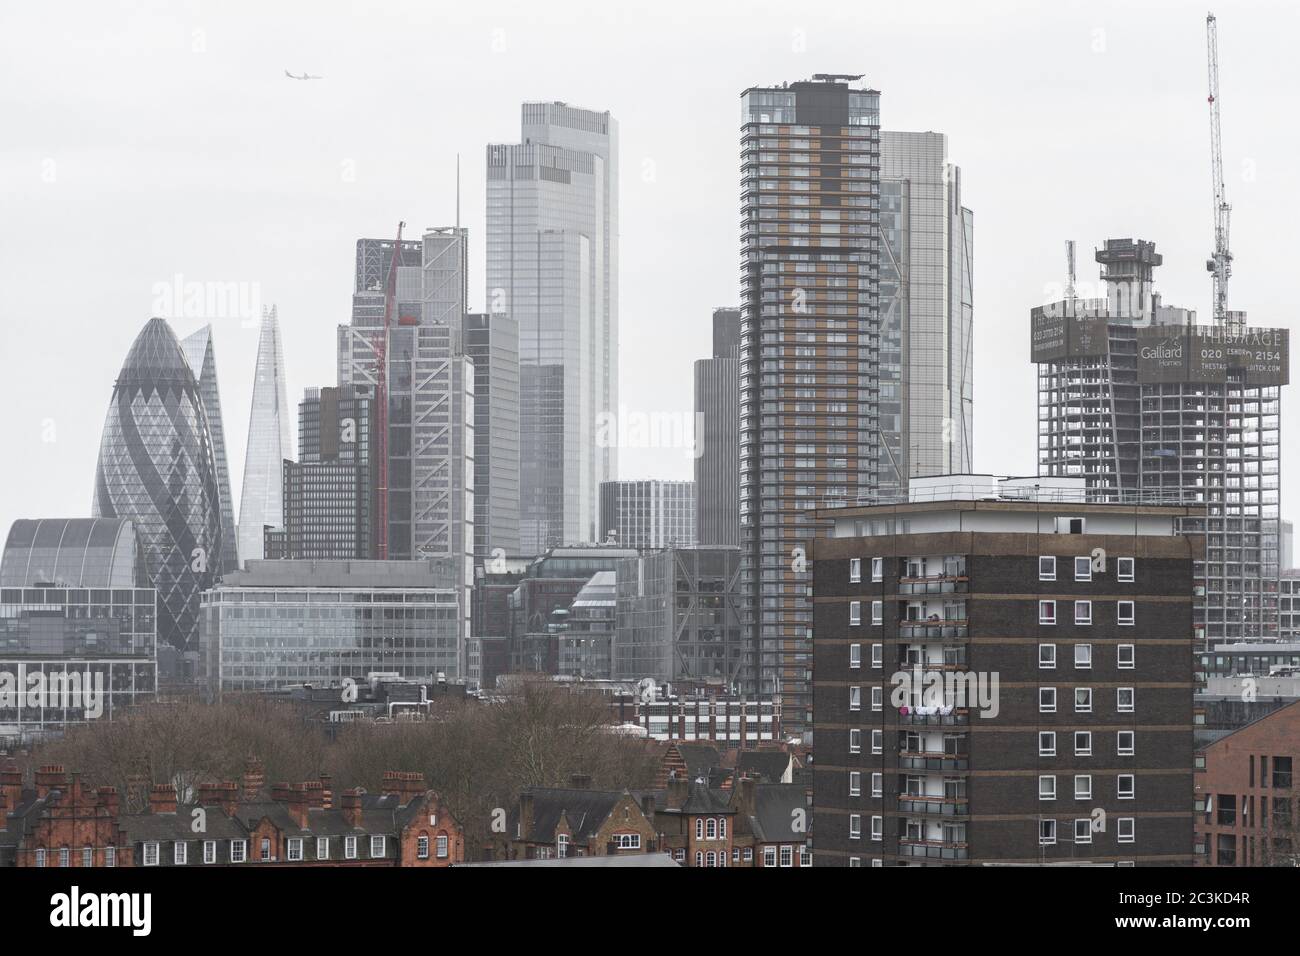 Luftaufnahme der City of London unter der Bewölkung Himmel Stockfoto